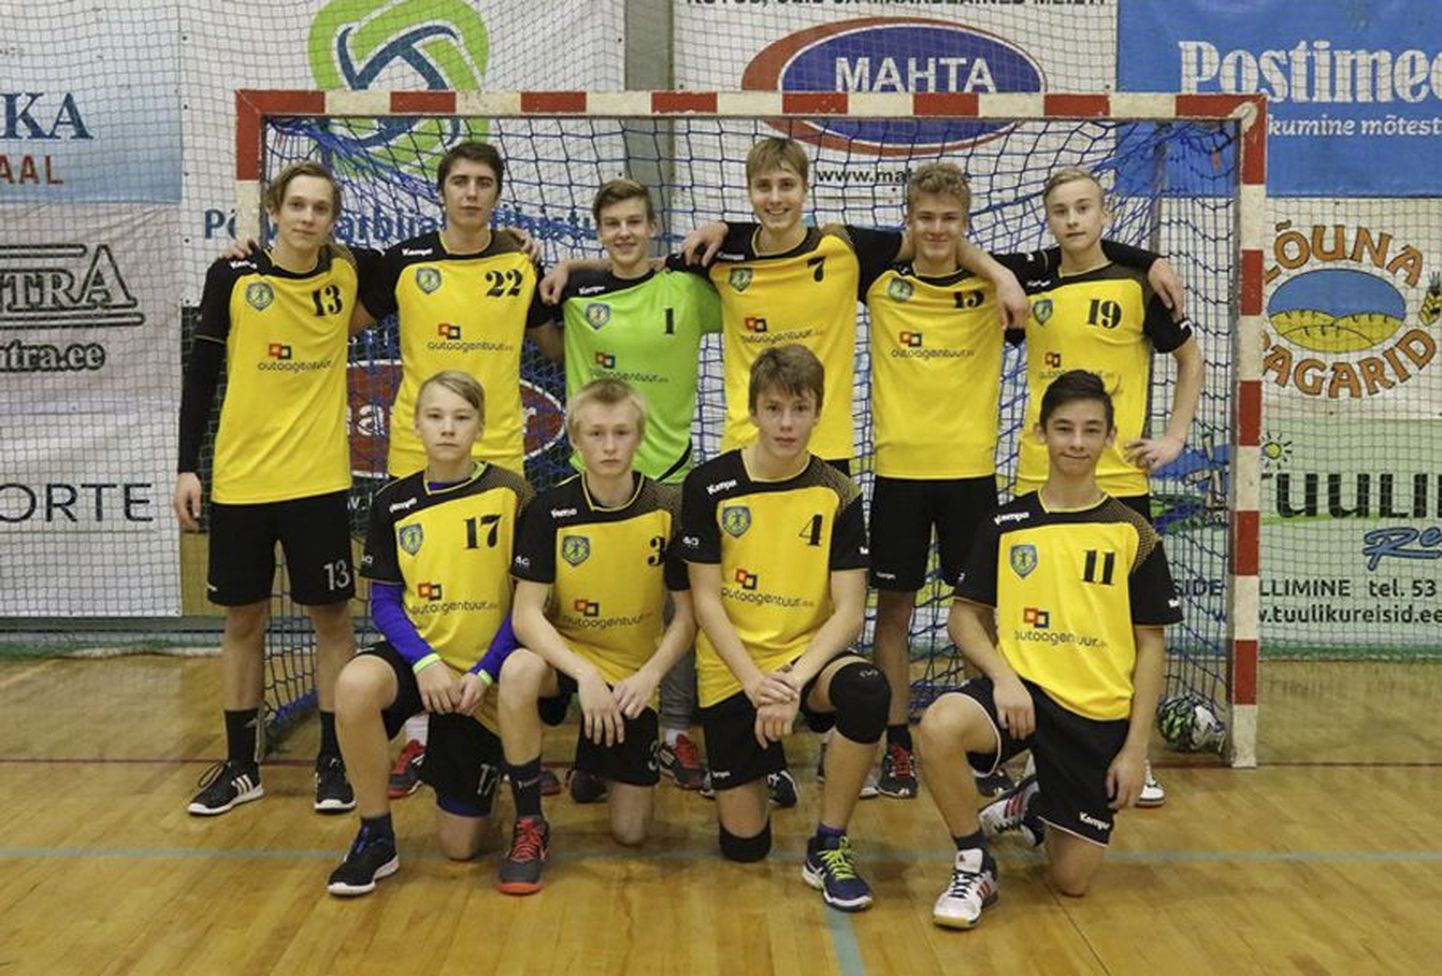 Viljandi spordikooli B-klassi noormehed saavutasid Eesti karikavõistlustel kolmanda koha.